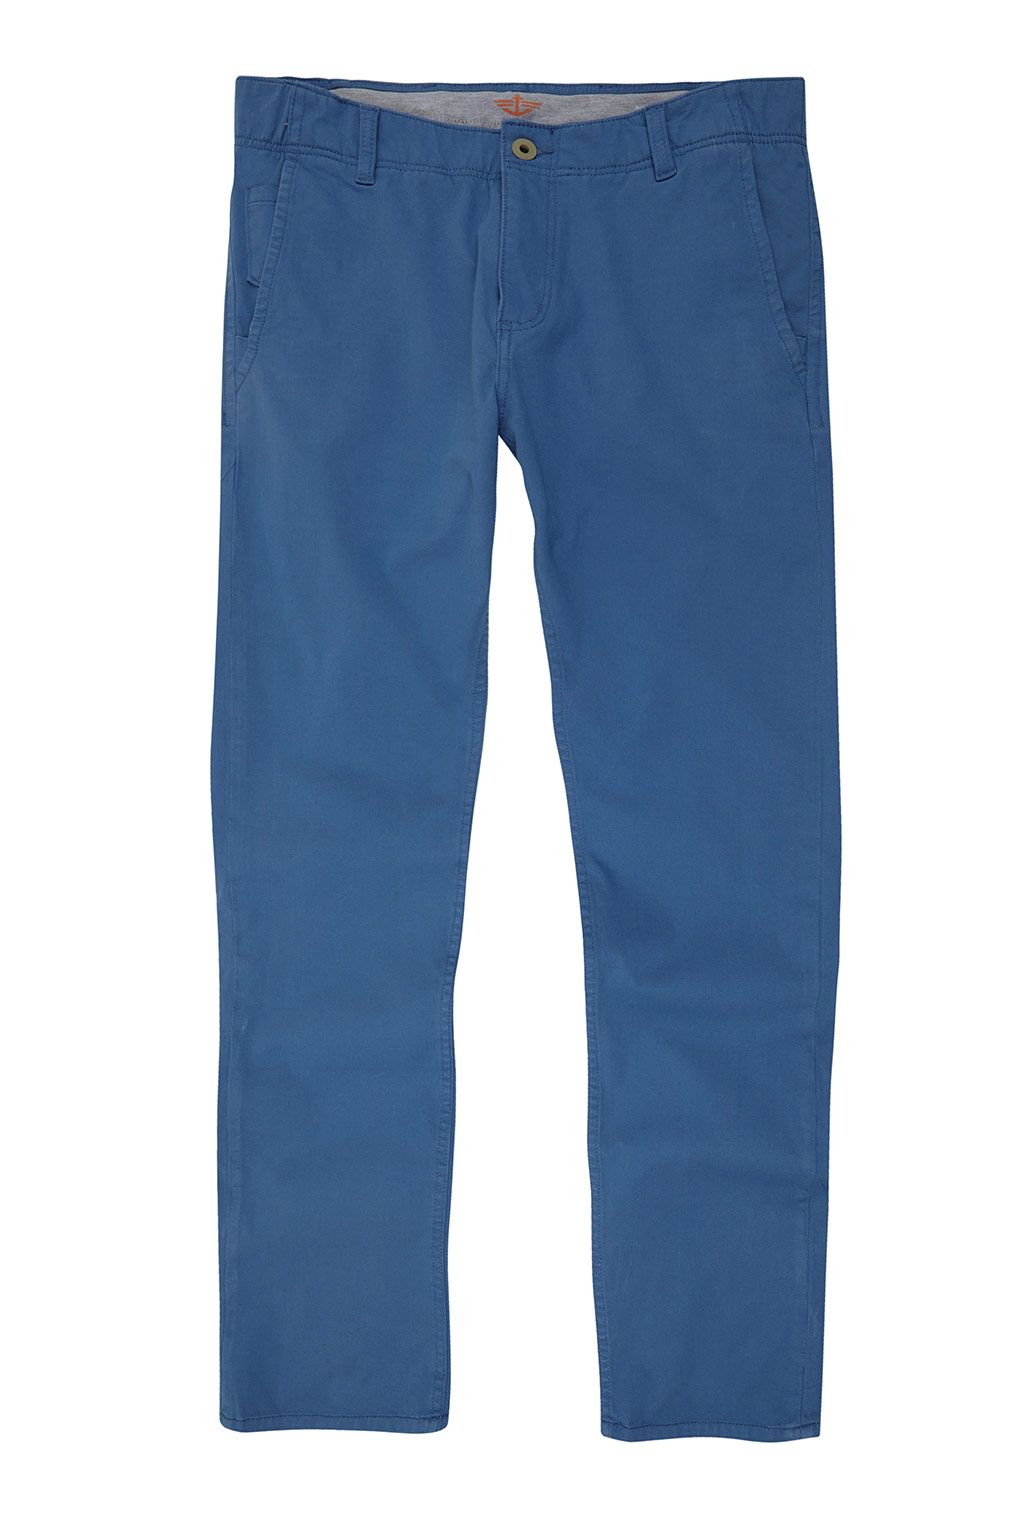 Dockers - Los pantalones que vas a vestir todo el verano